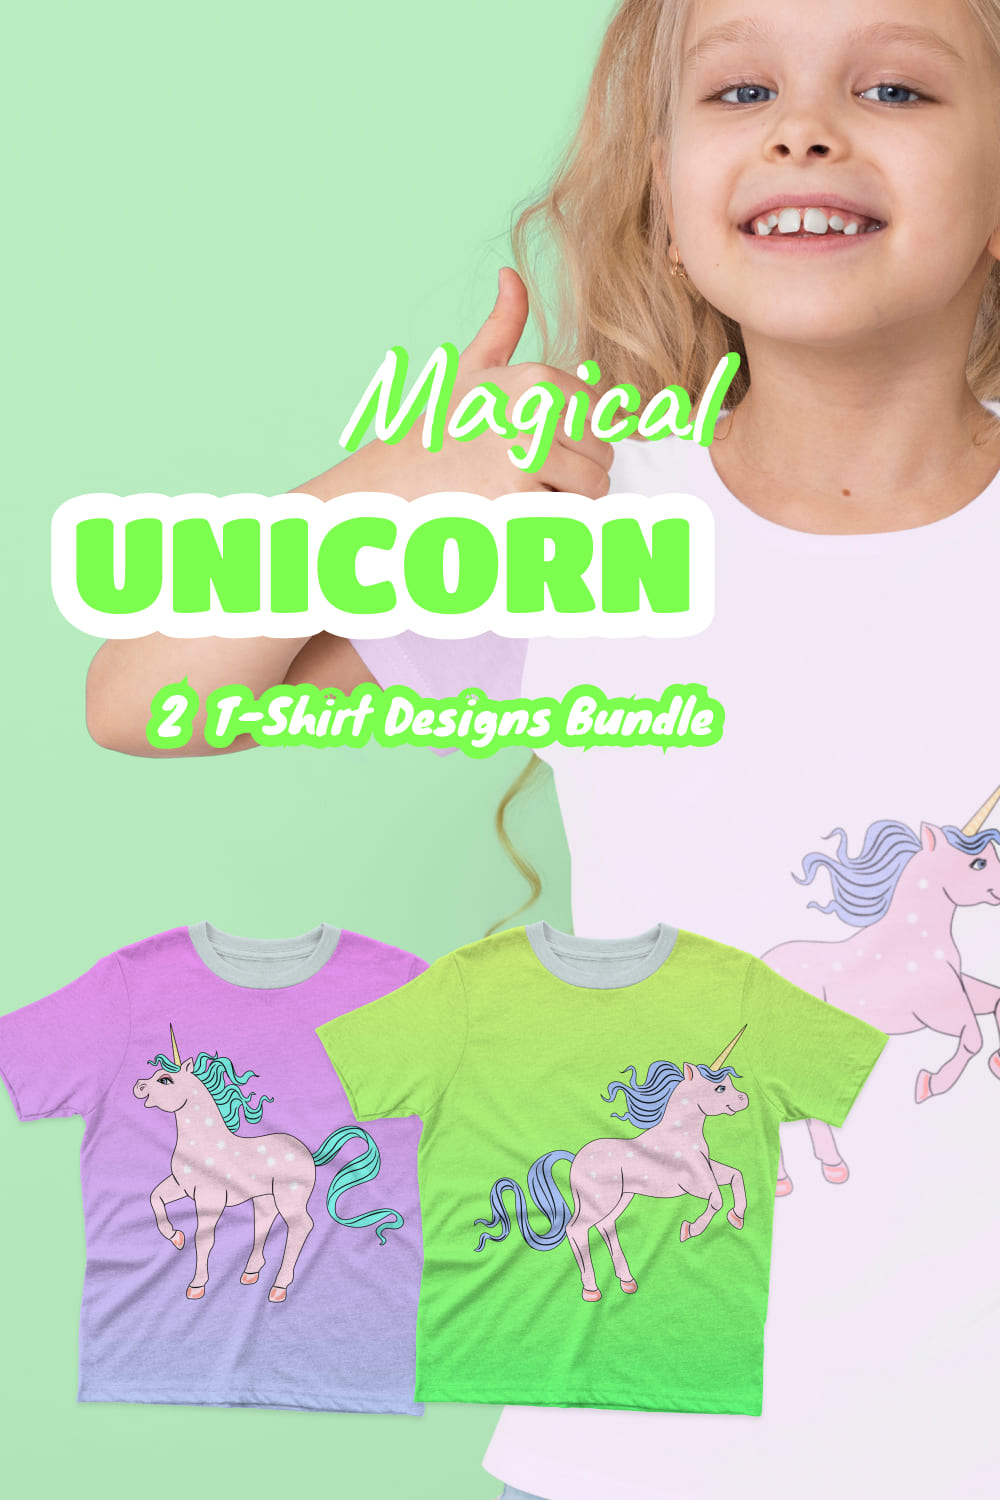 Magical Unicorn T-shirt Designs Bundle - Pinterest.